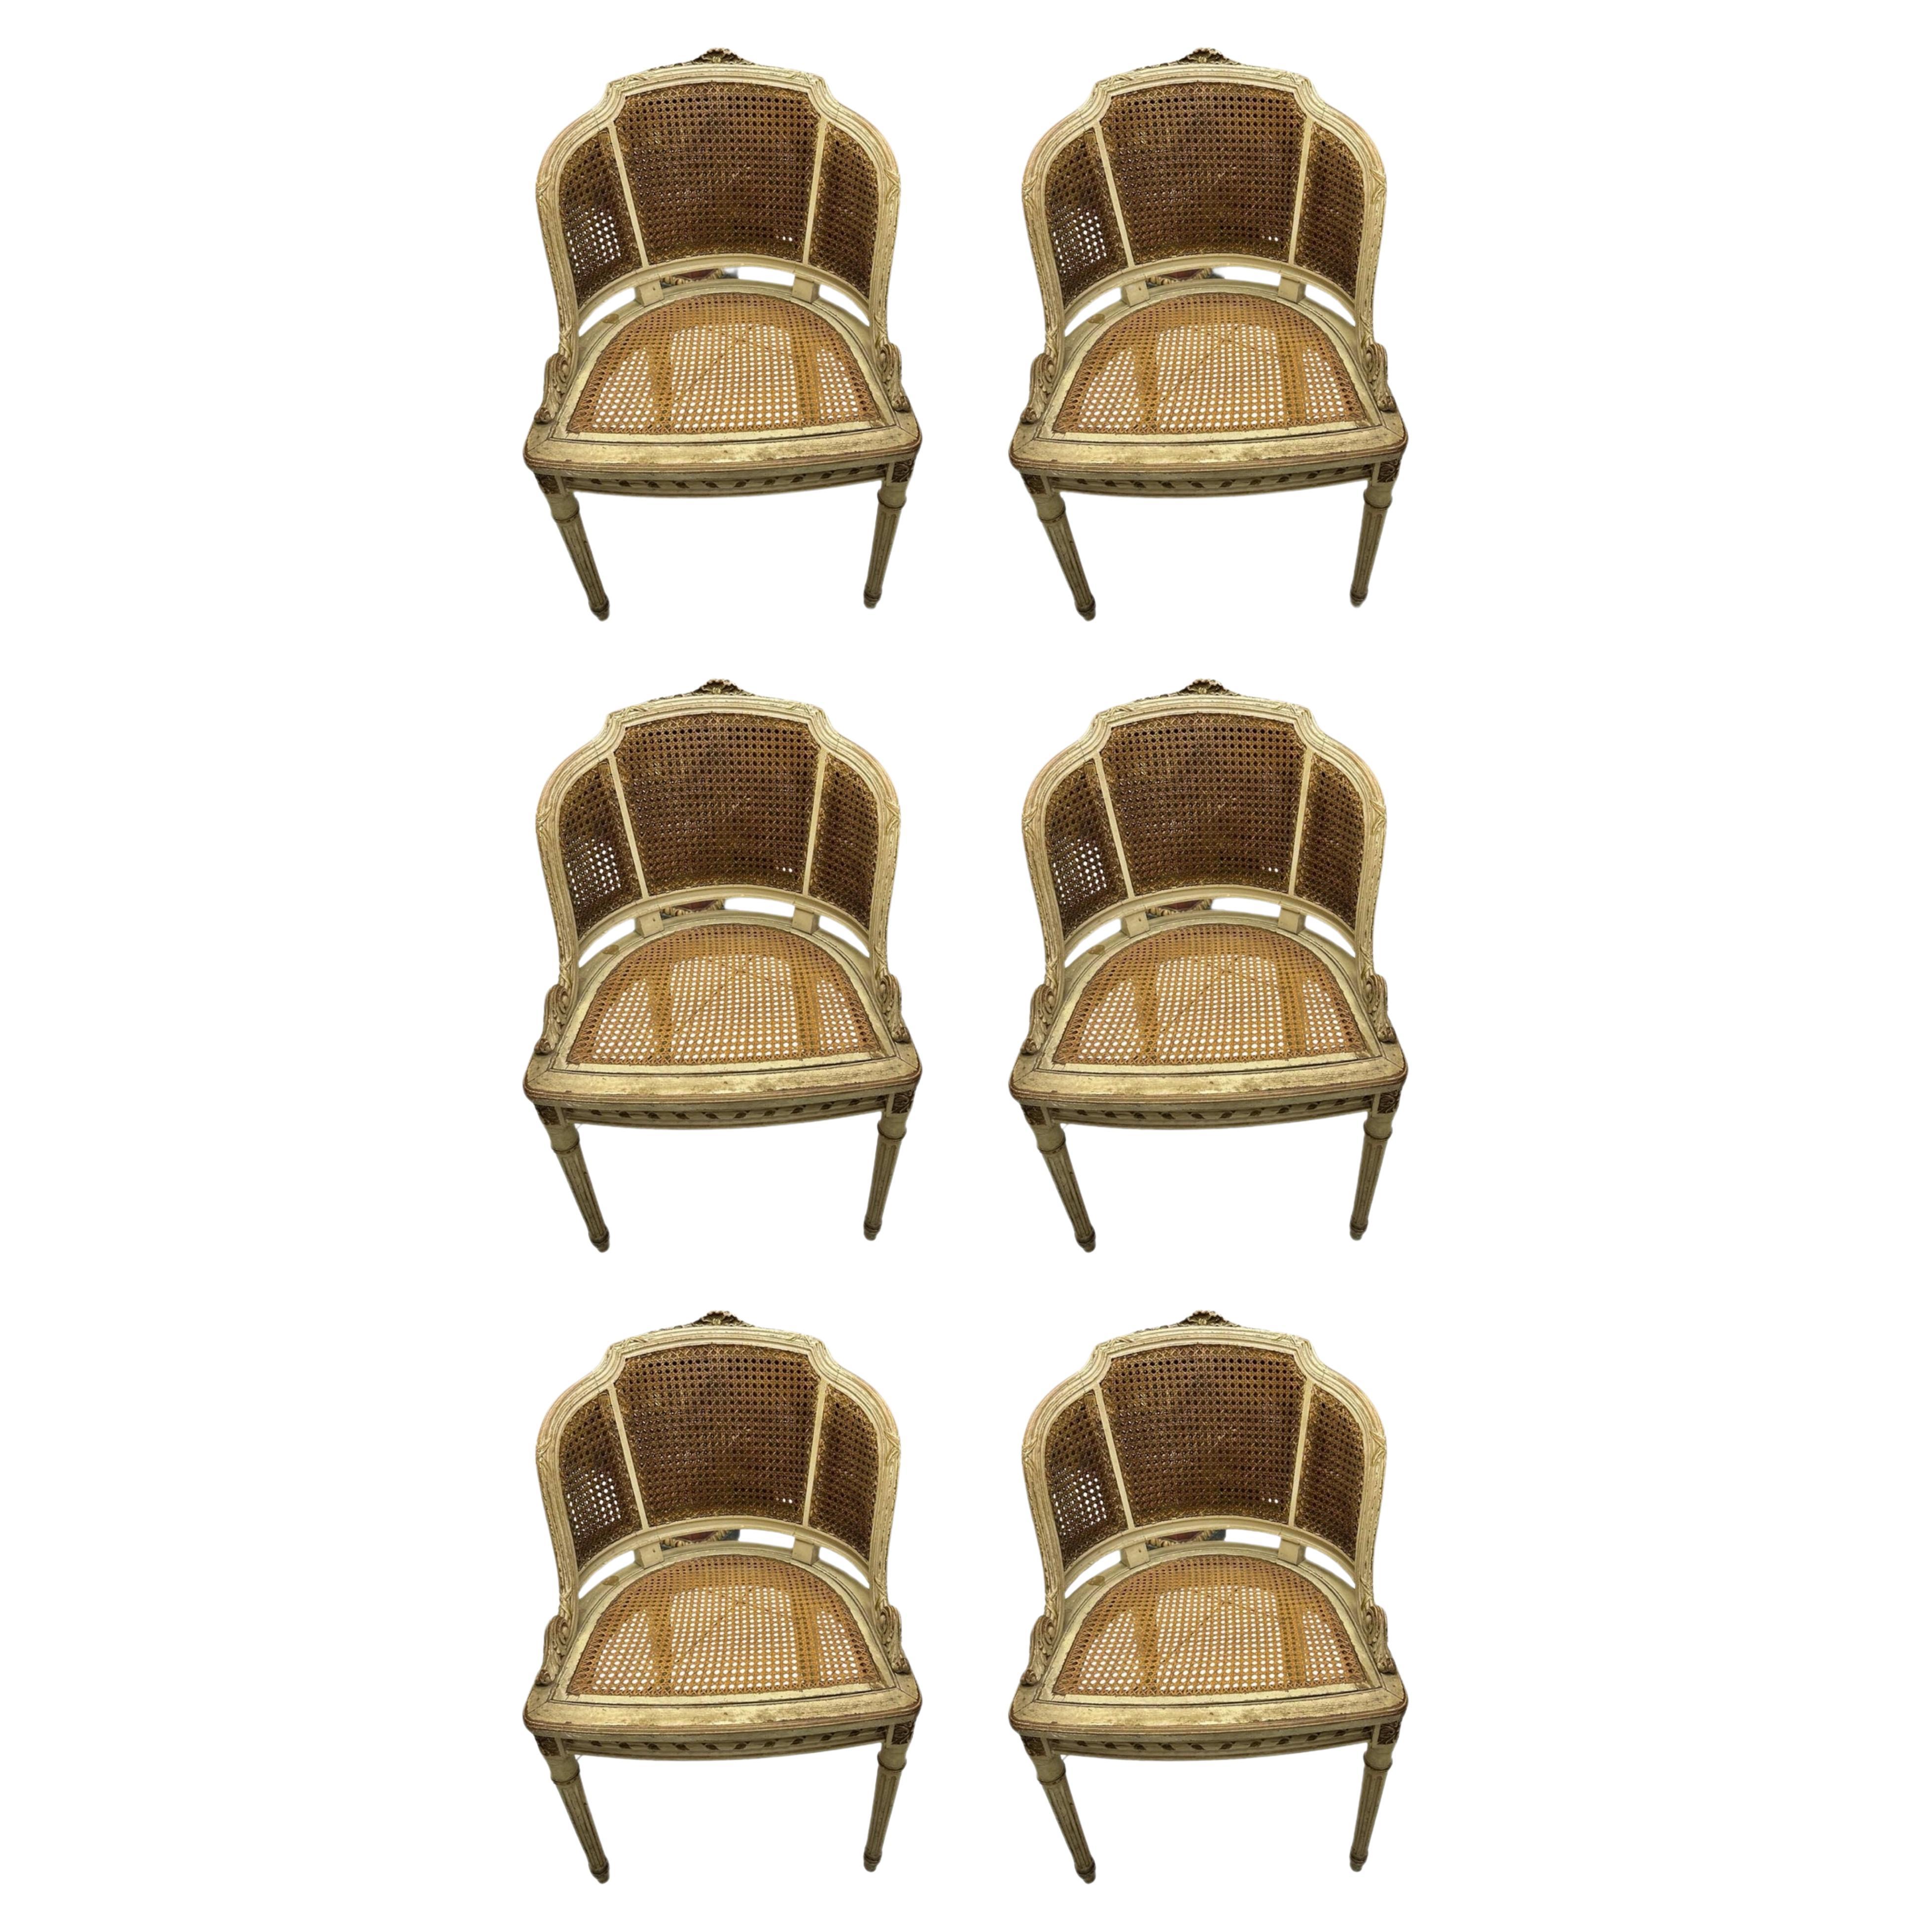 Magnifique et unique 6 (six) fauteuils italiens du 19ème siècle